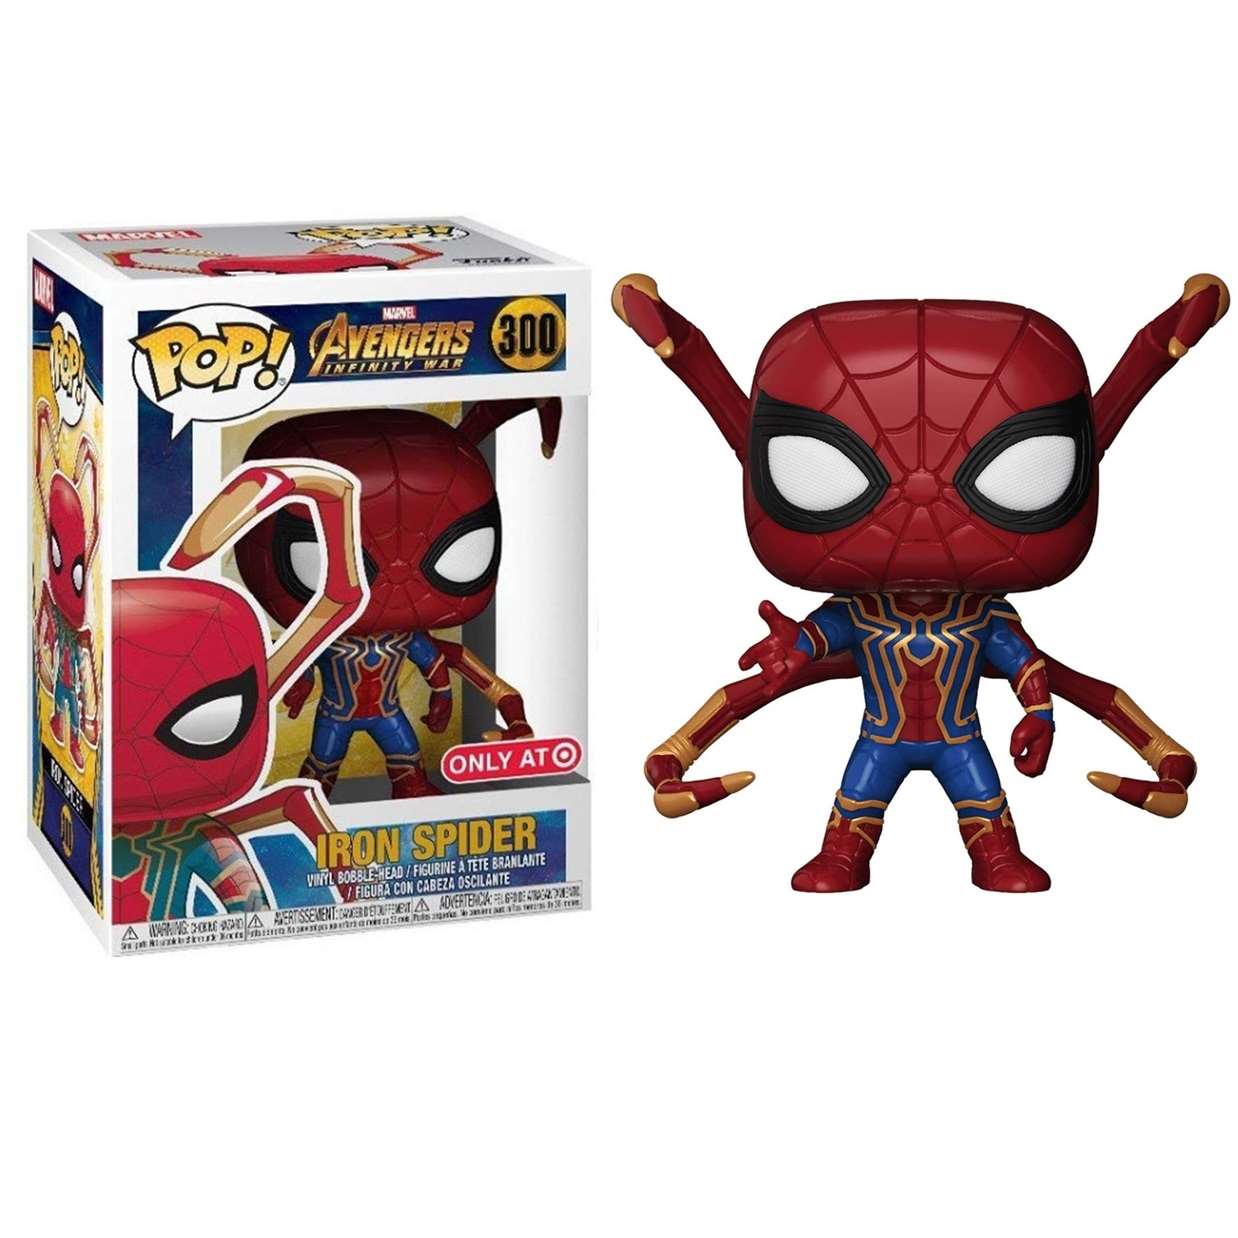 Iron Spider #300 Avengers Infinity War Funko Pop! Exclusivo Target